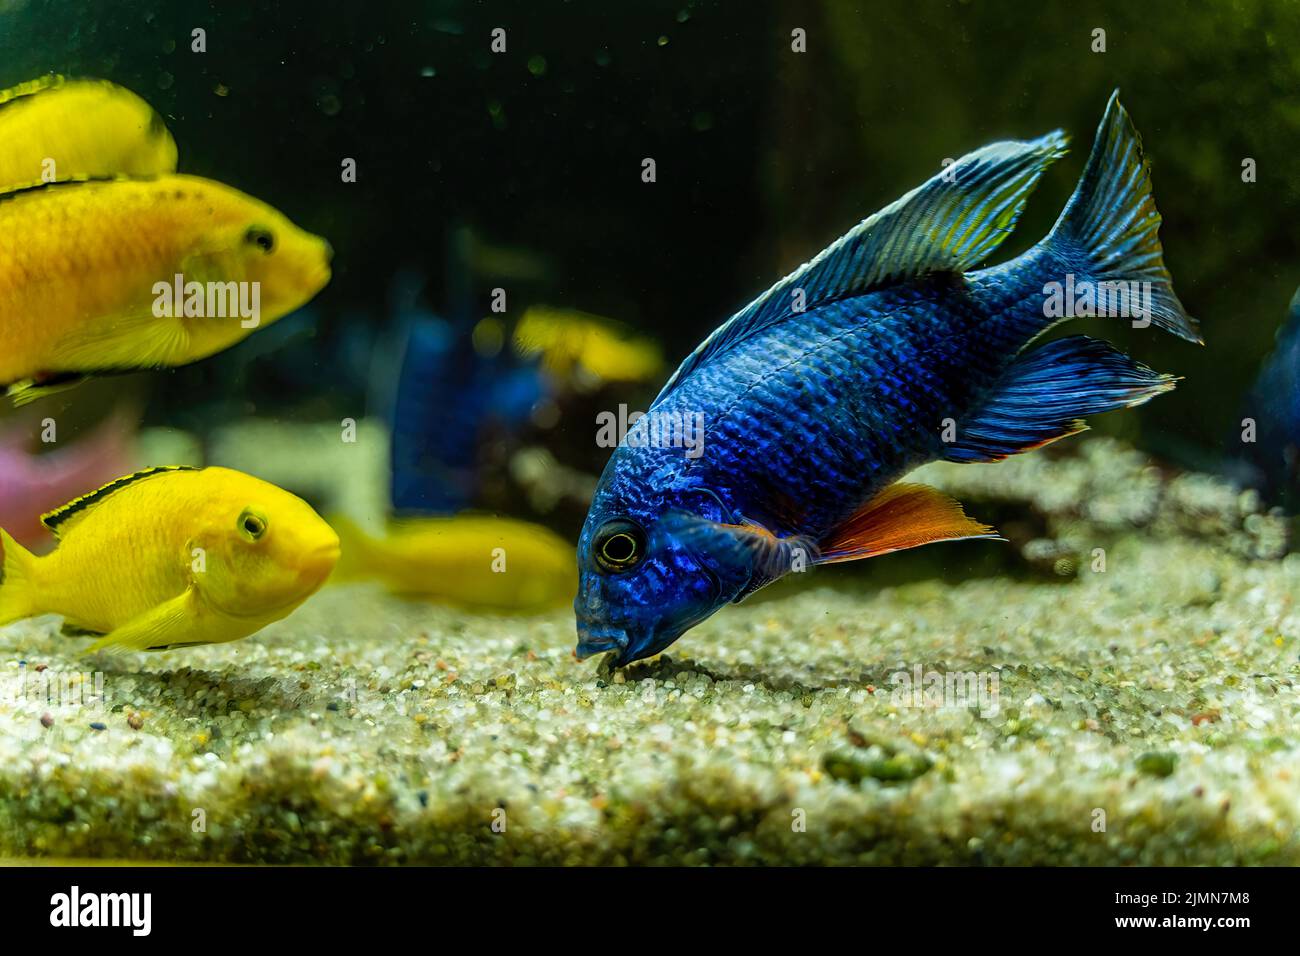 Aulonocara nyassae poisson connu sous le nom de l'empereur cichlid manger ou enlever des algues de la pierre de gravier. Poisson bleu dans l'eau sombre. Banque D'Images